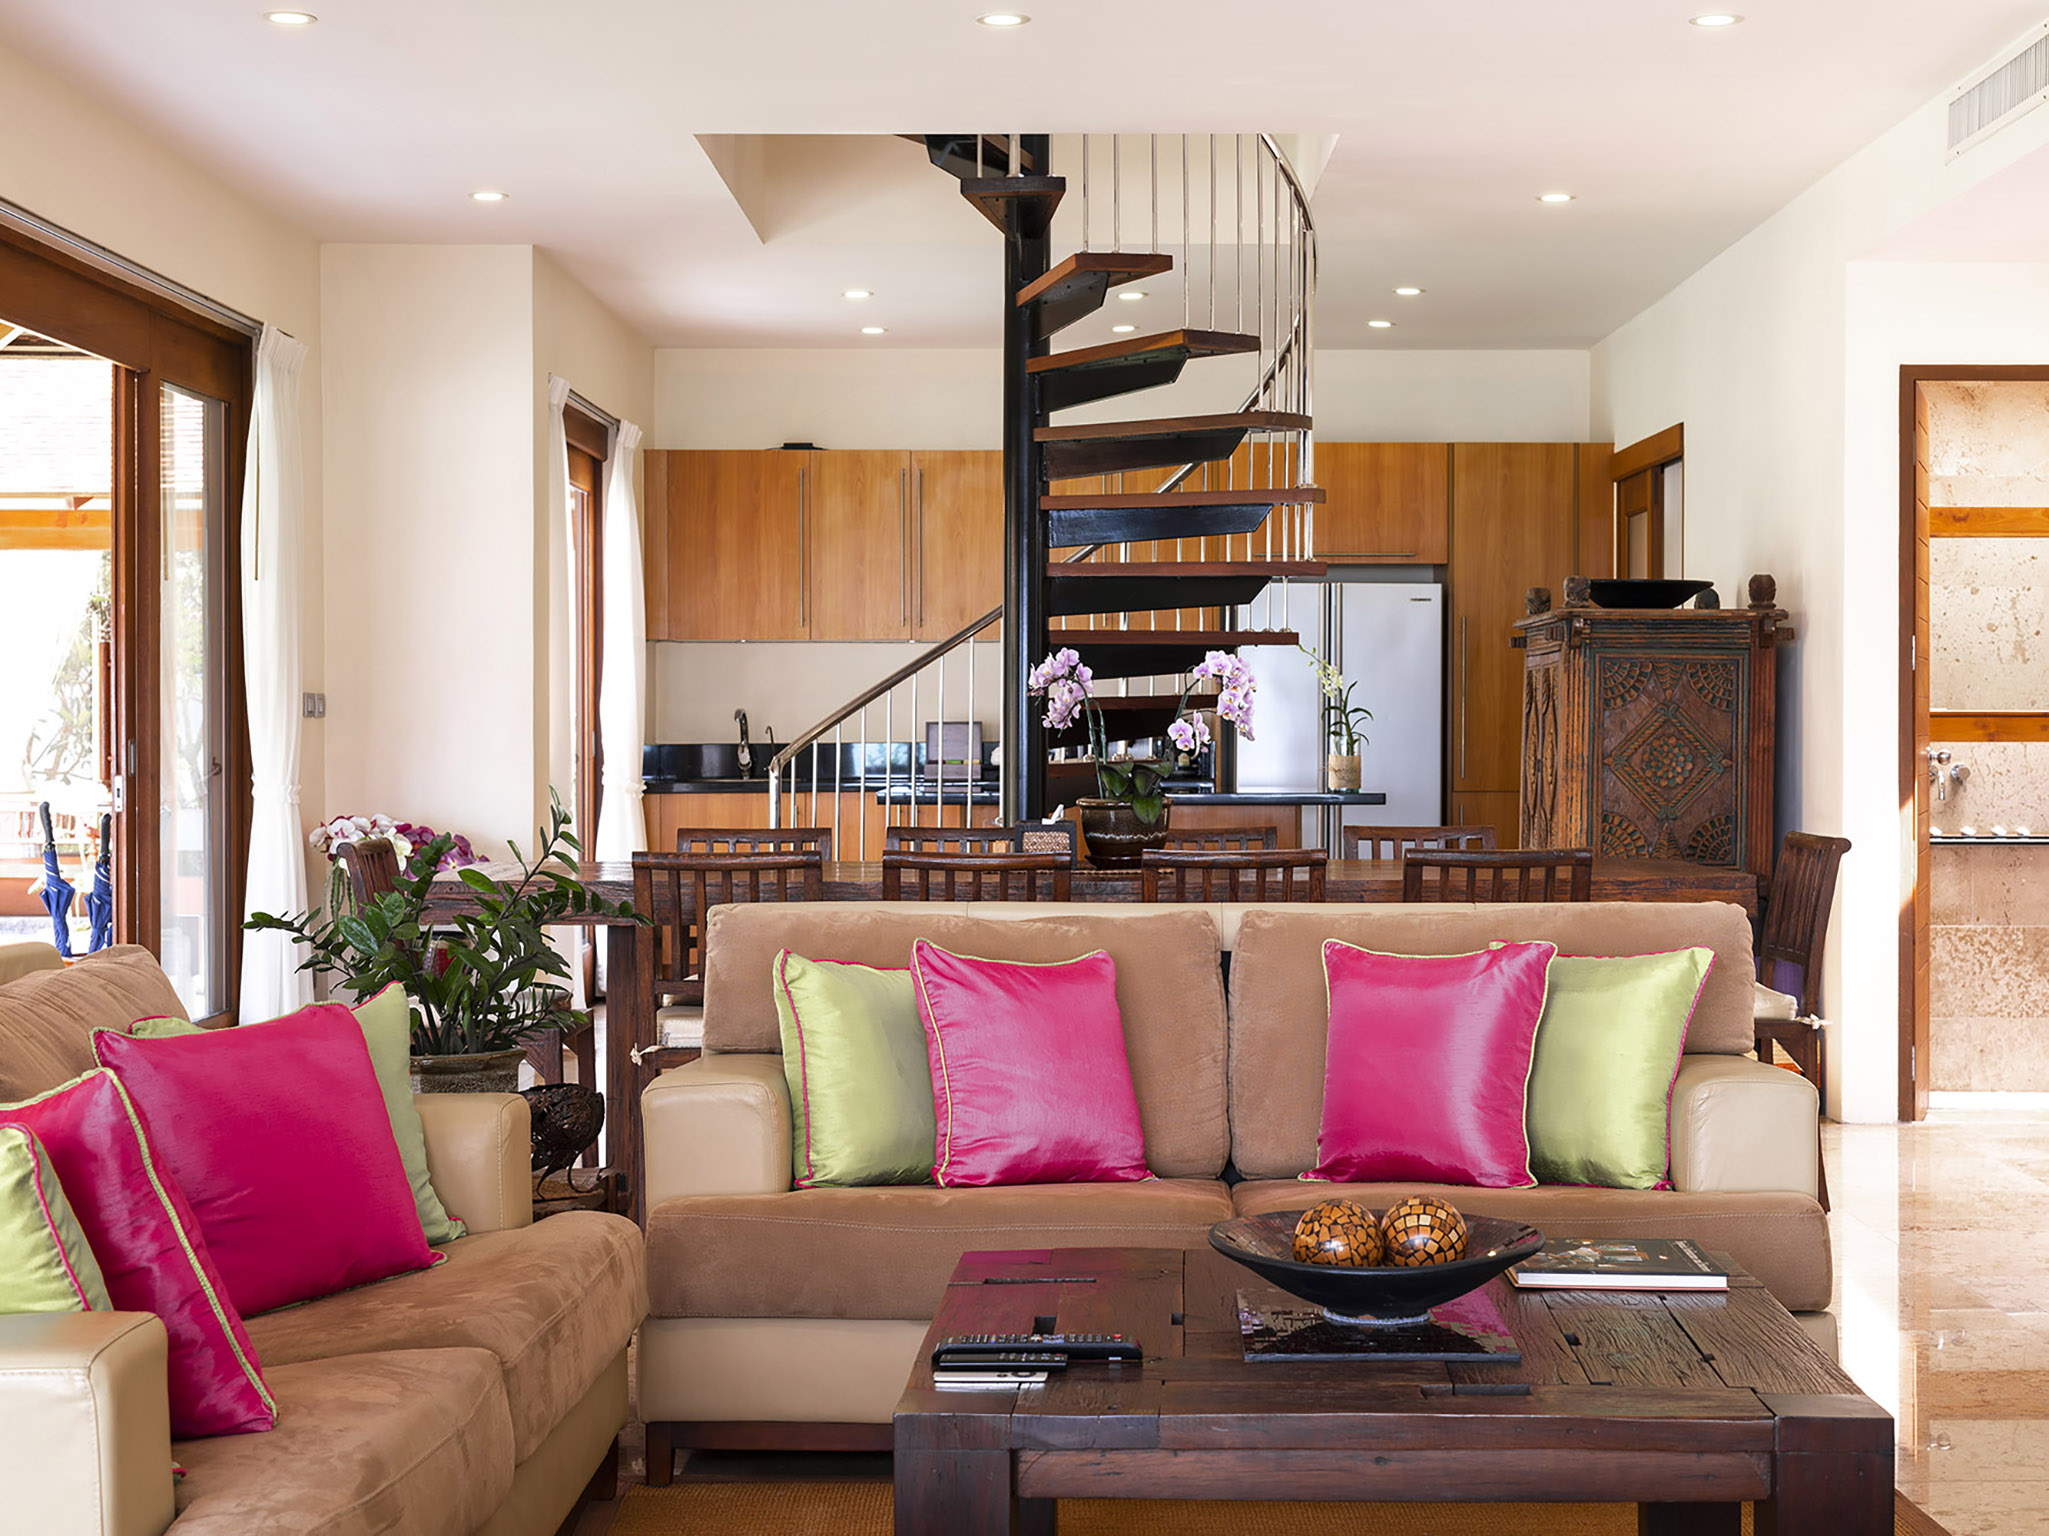 Tawantok Beach Villas - Villa 1 - Living room layout